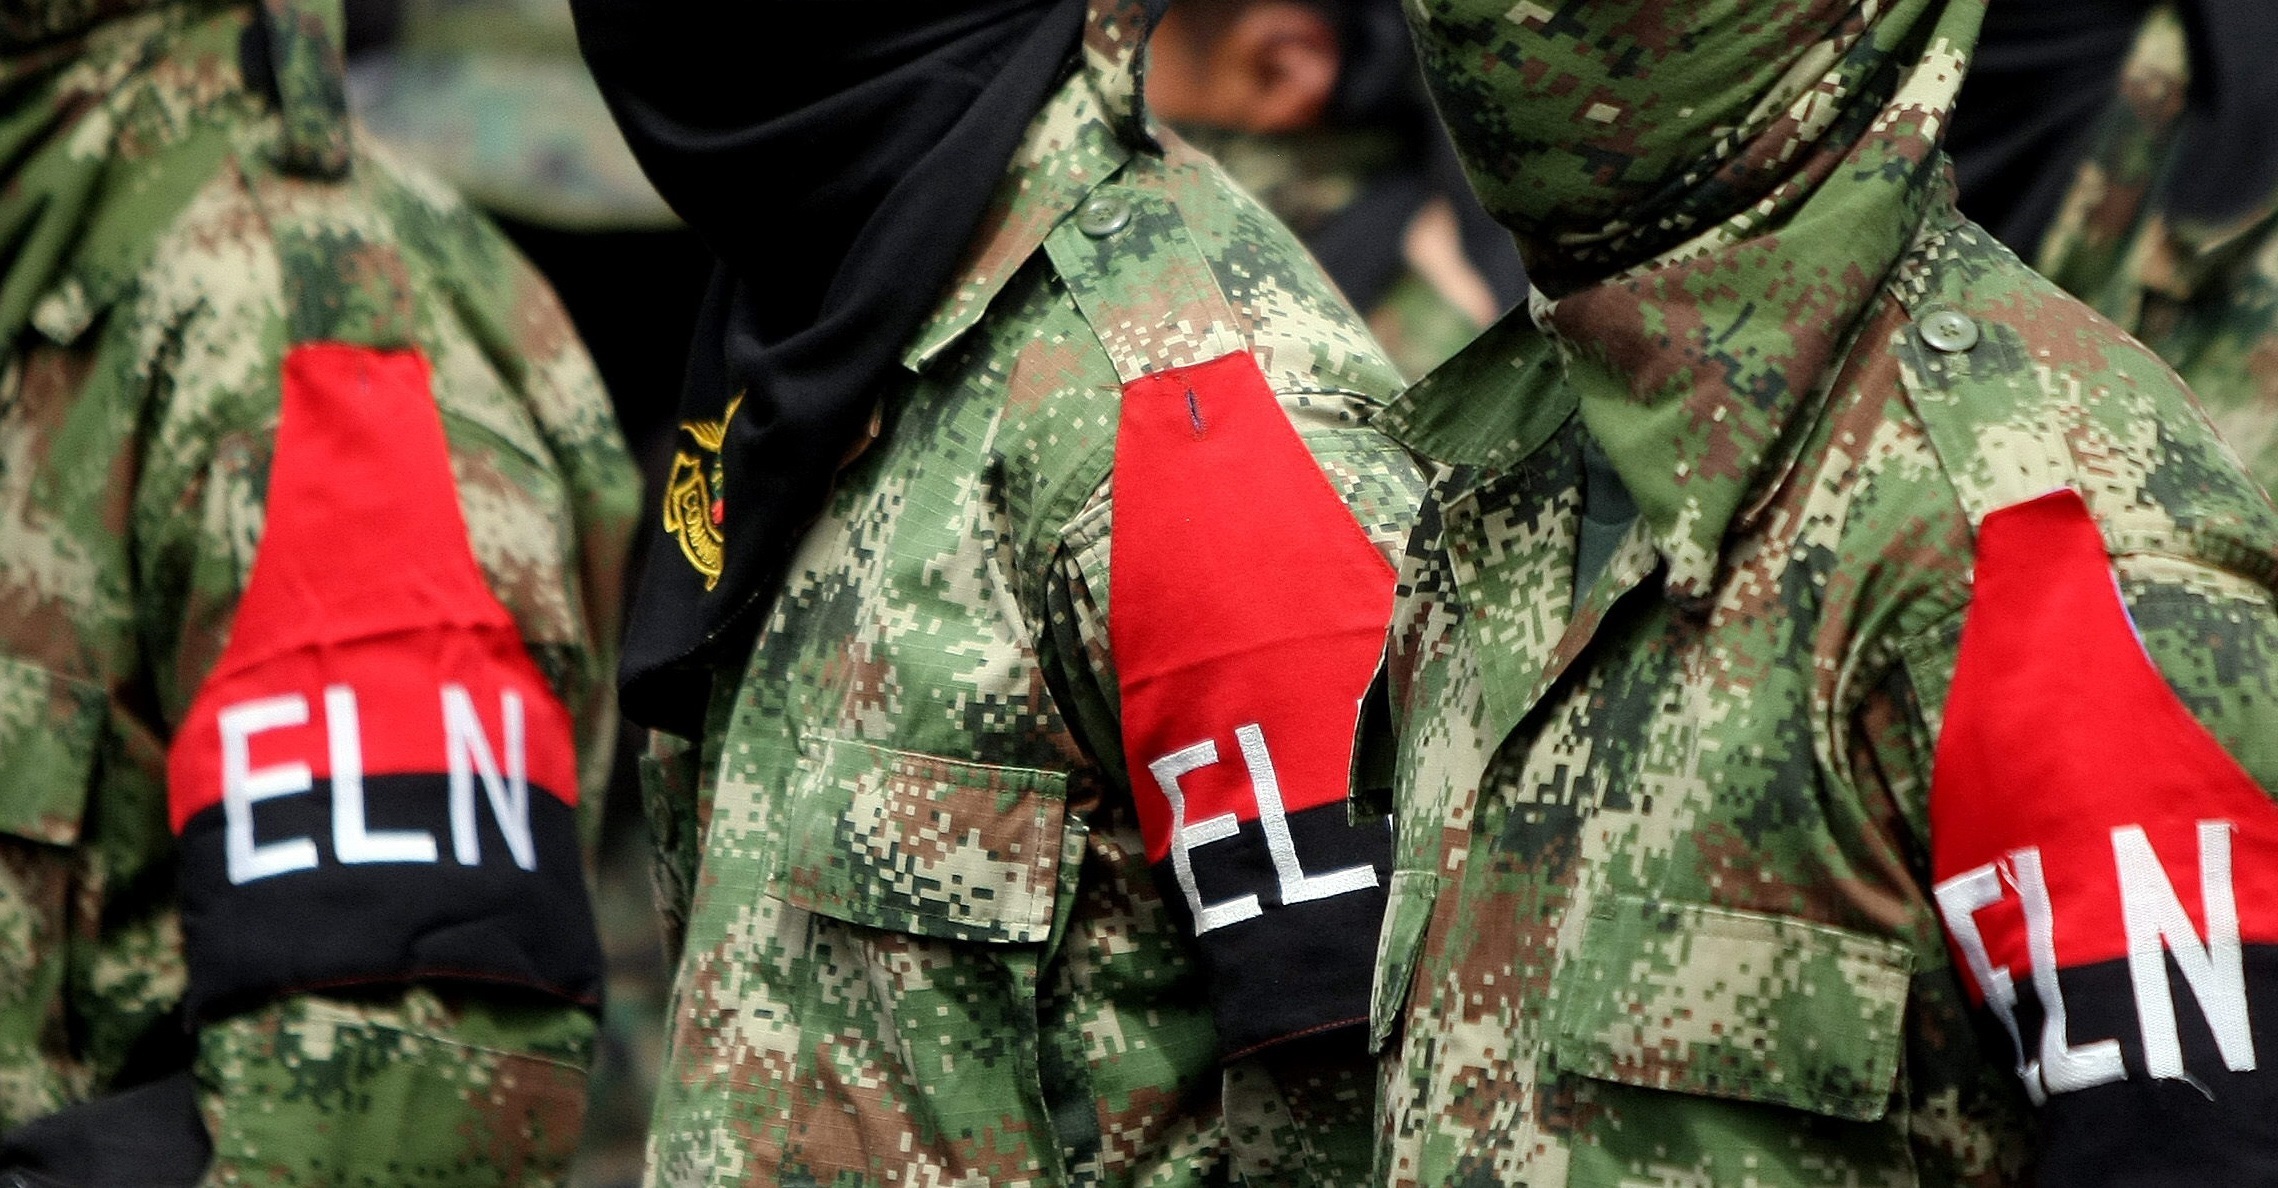 Eln confirma el secuestro de dos soldados que estaban reportados como desaparecidos en Arauca